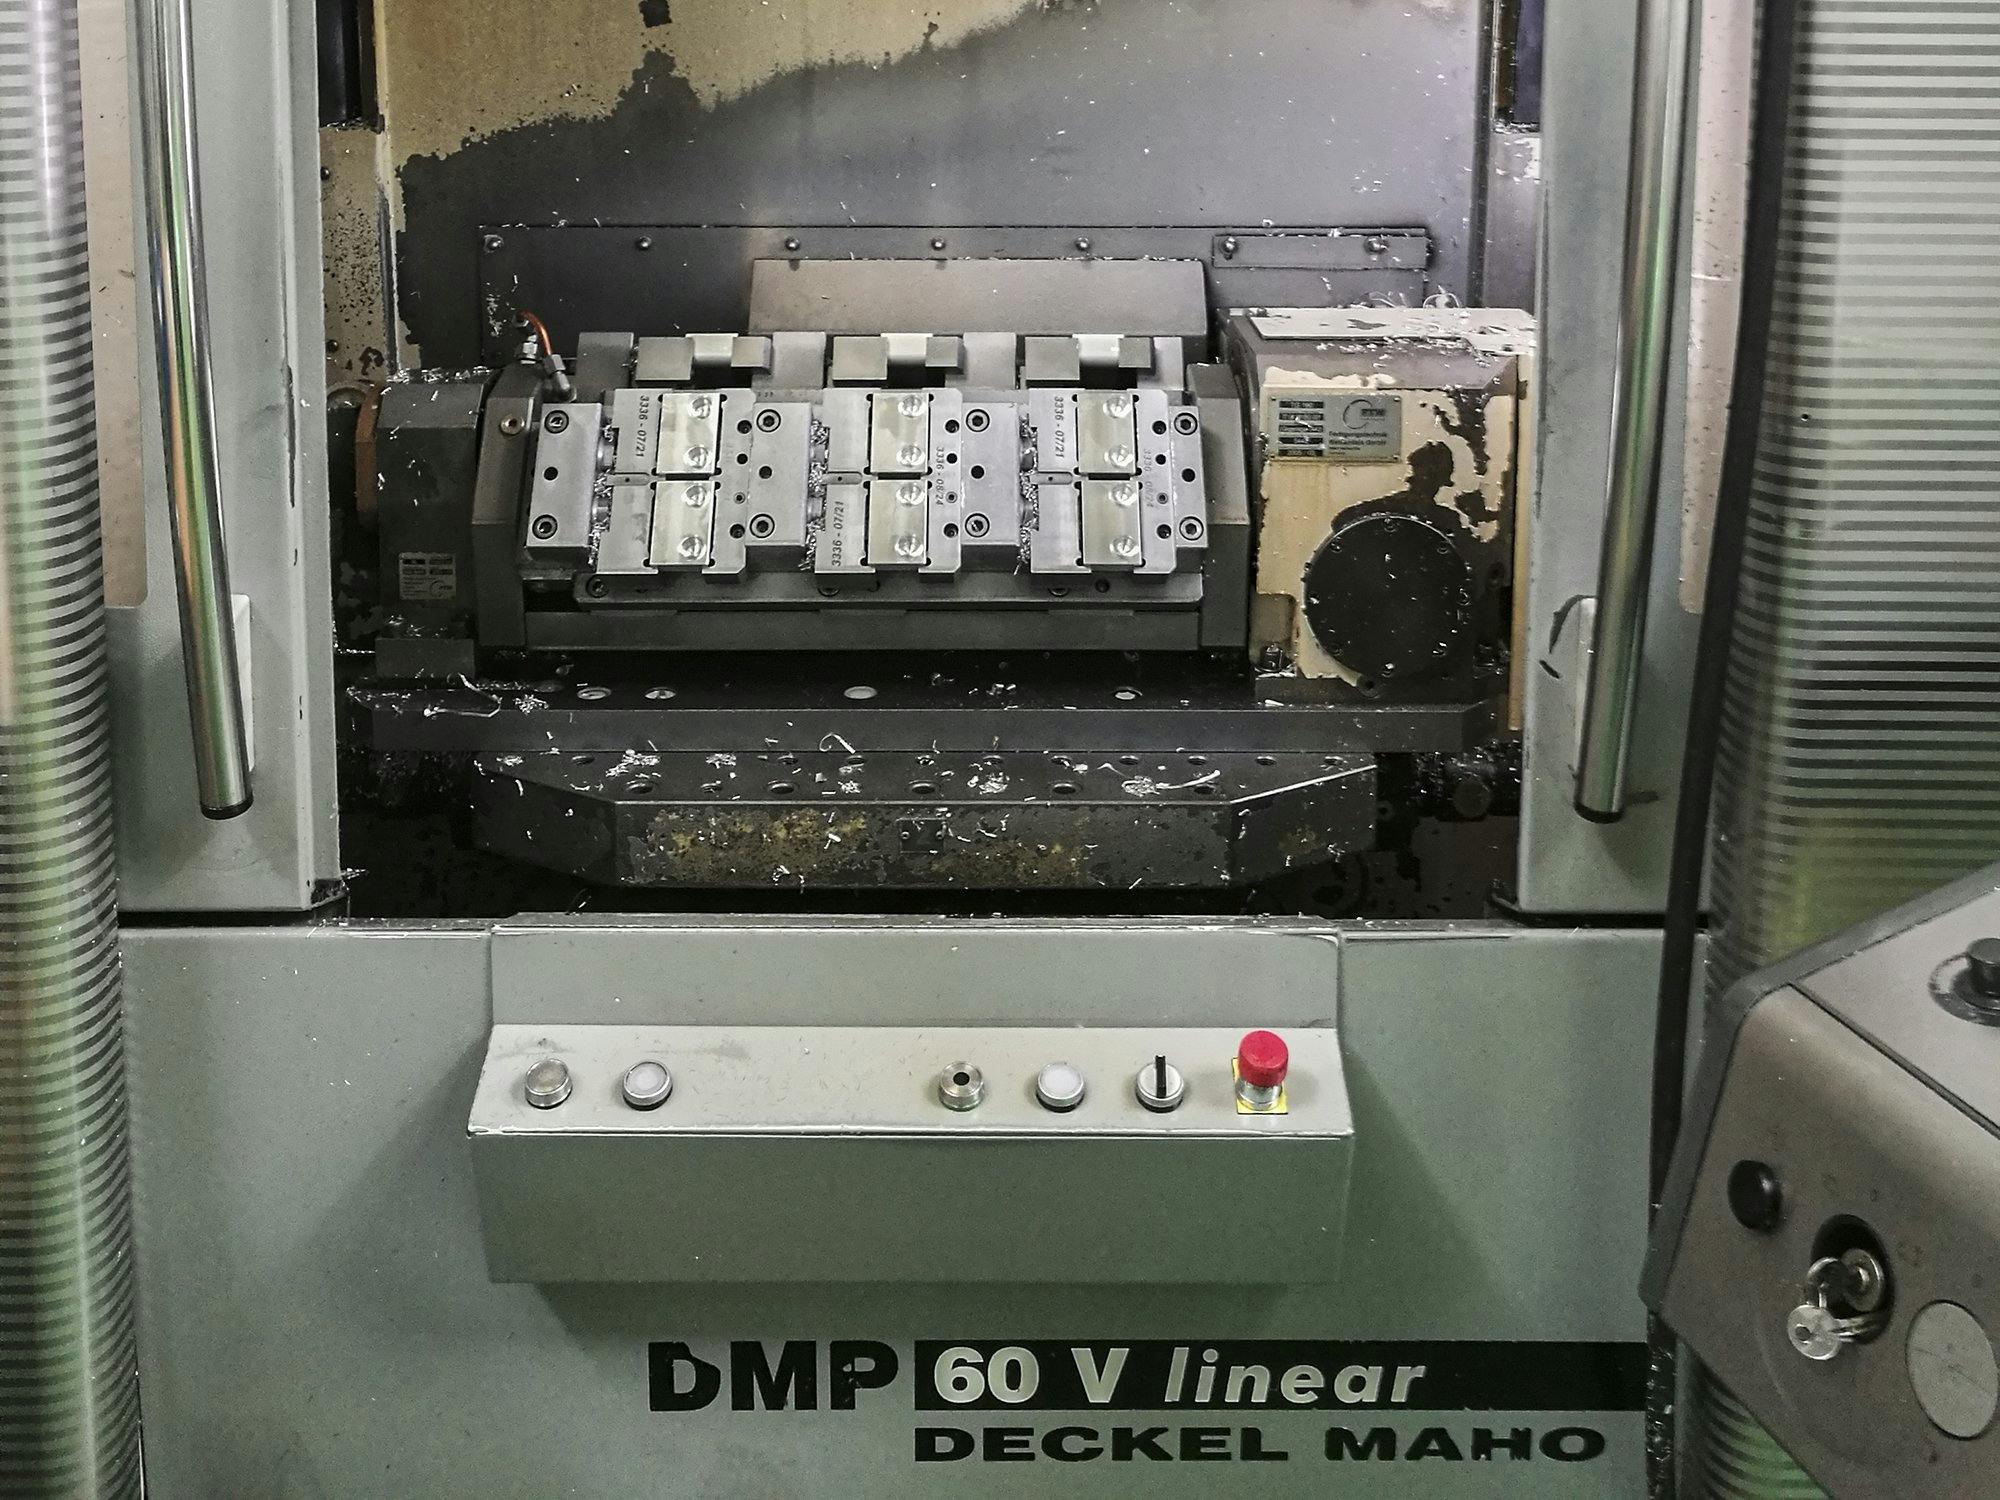 Widok z przodu maszyny DECKEL MAHO DMP 60 V linear